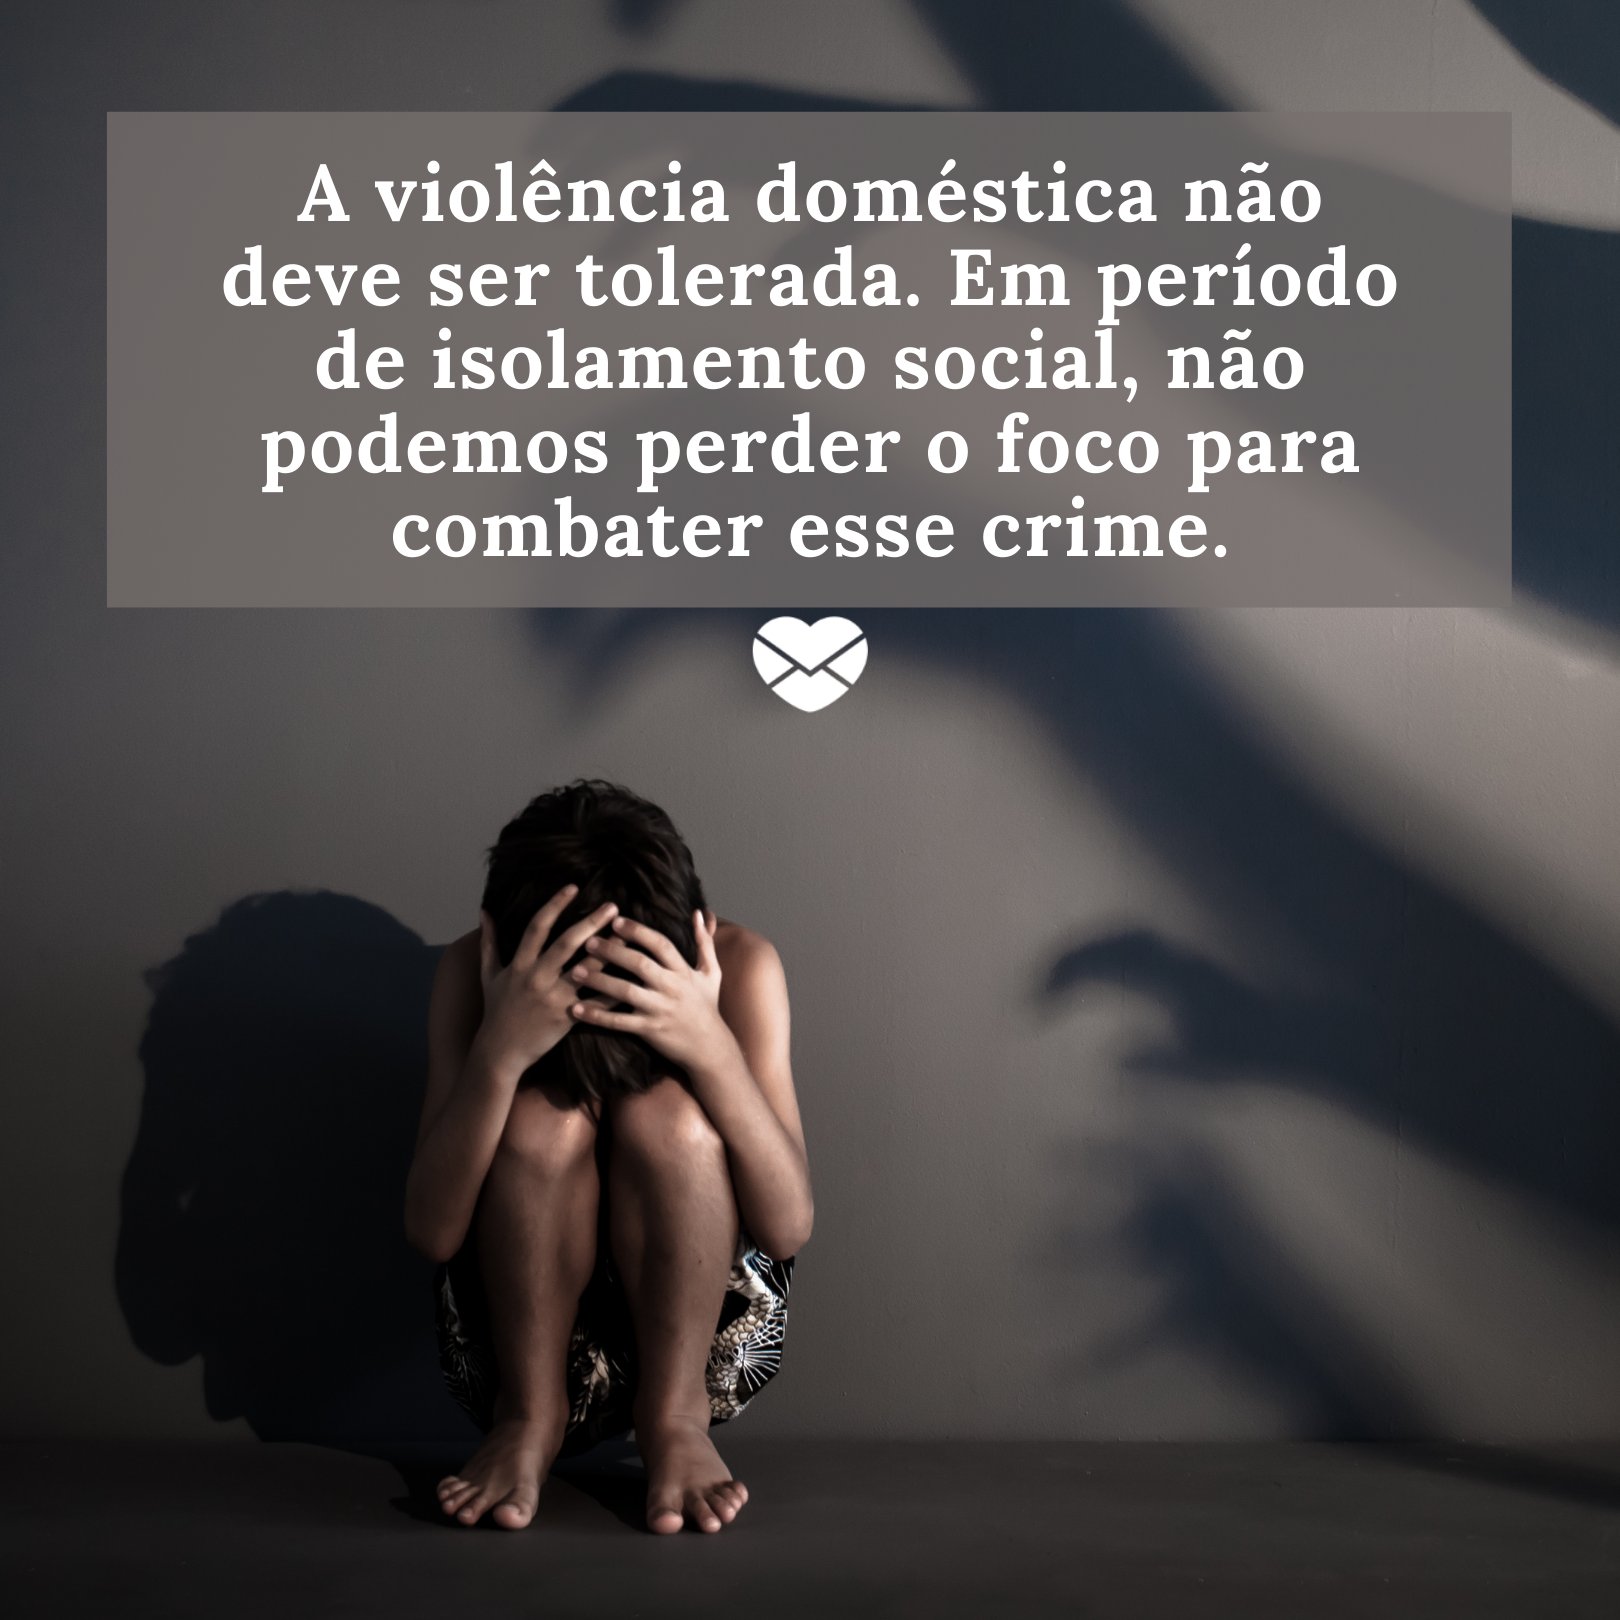 'A violência doméstica não deve ser tolerada. Em período de isolamento social, não podemos perder o foco para combater esse crime.' - Frases contra a violência doméstica na quarentena